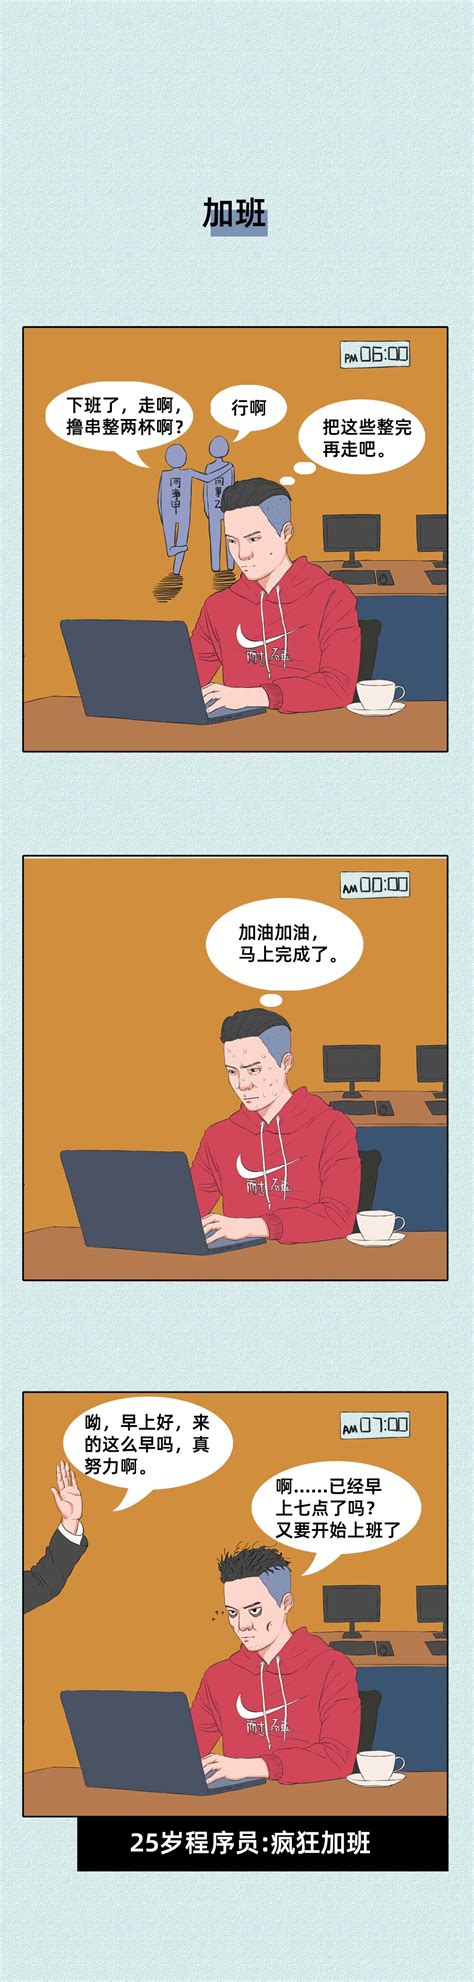 我不理解中国程序员35岁就老了的说法！_凤凰网视频_凤凰网